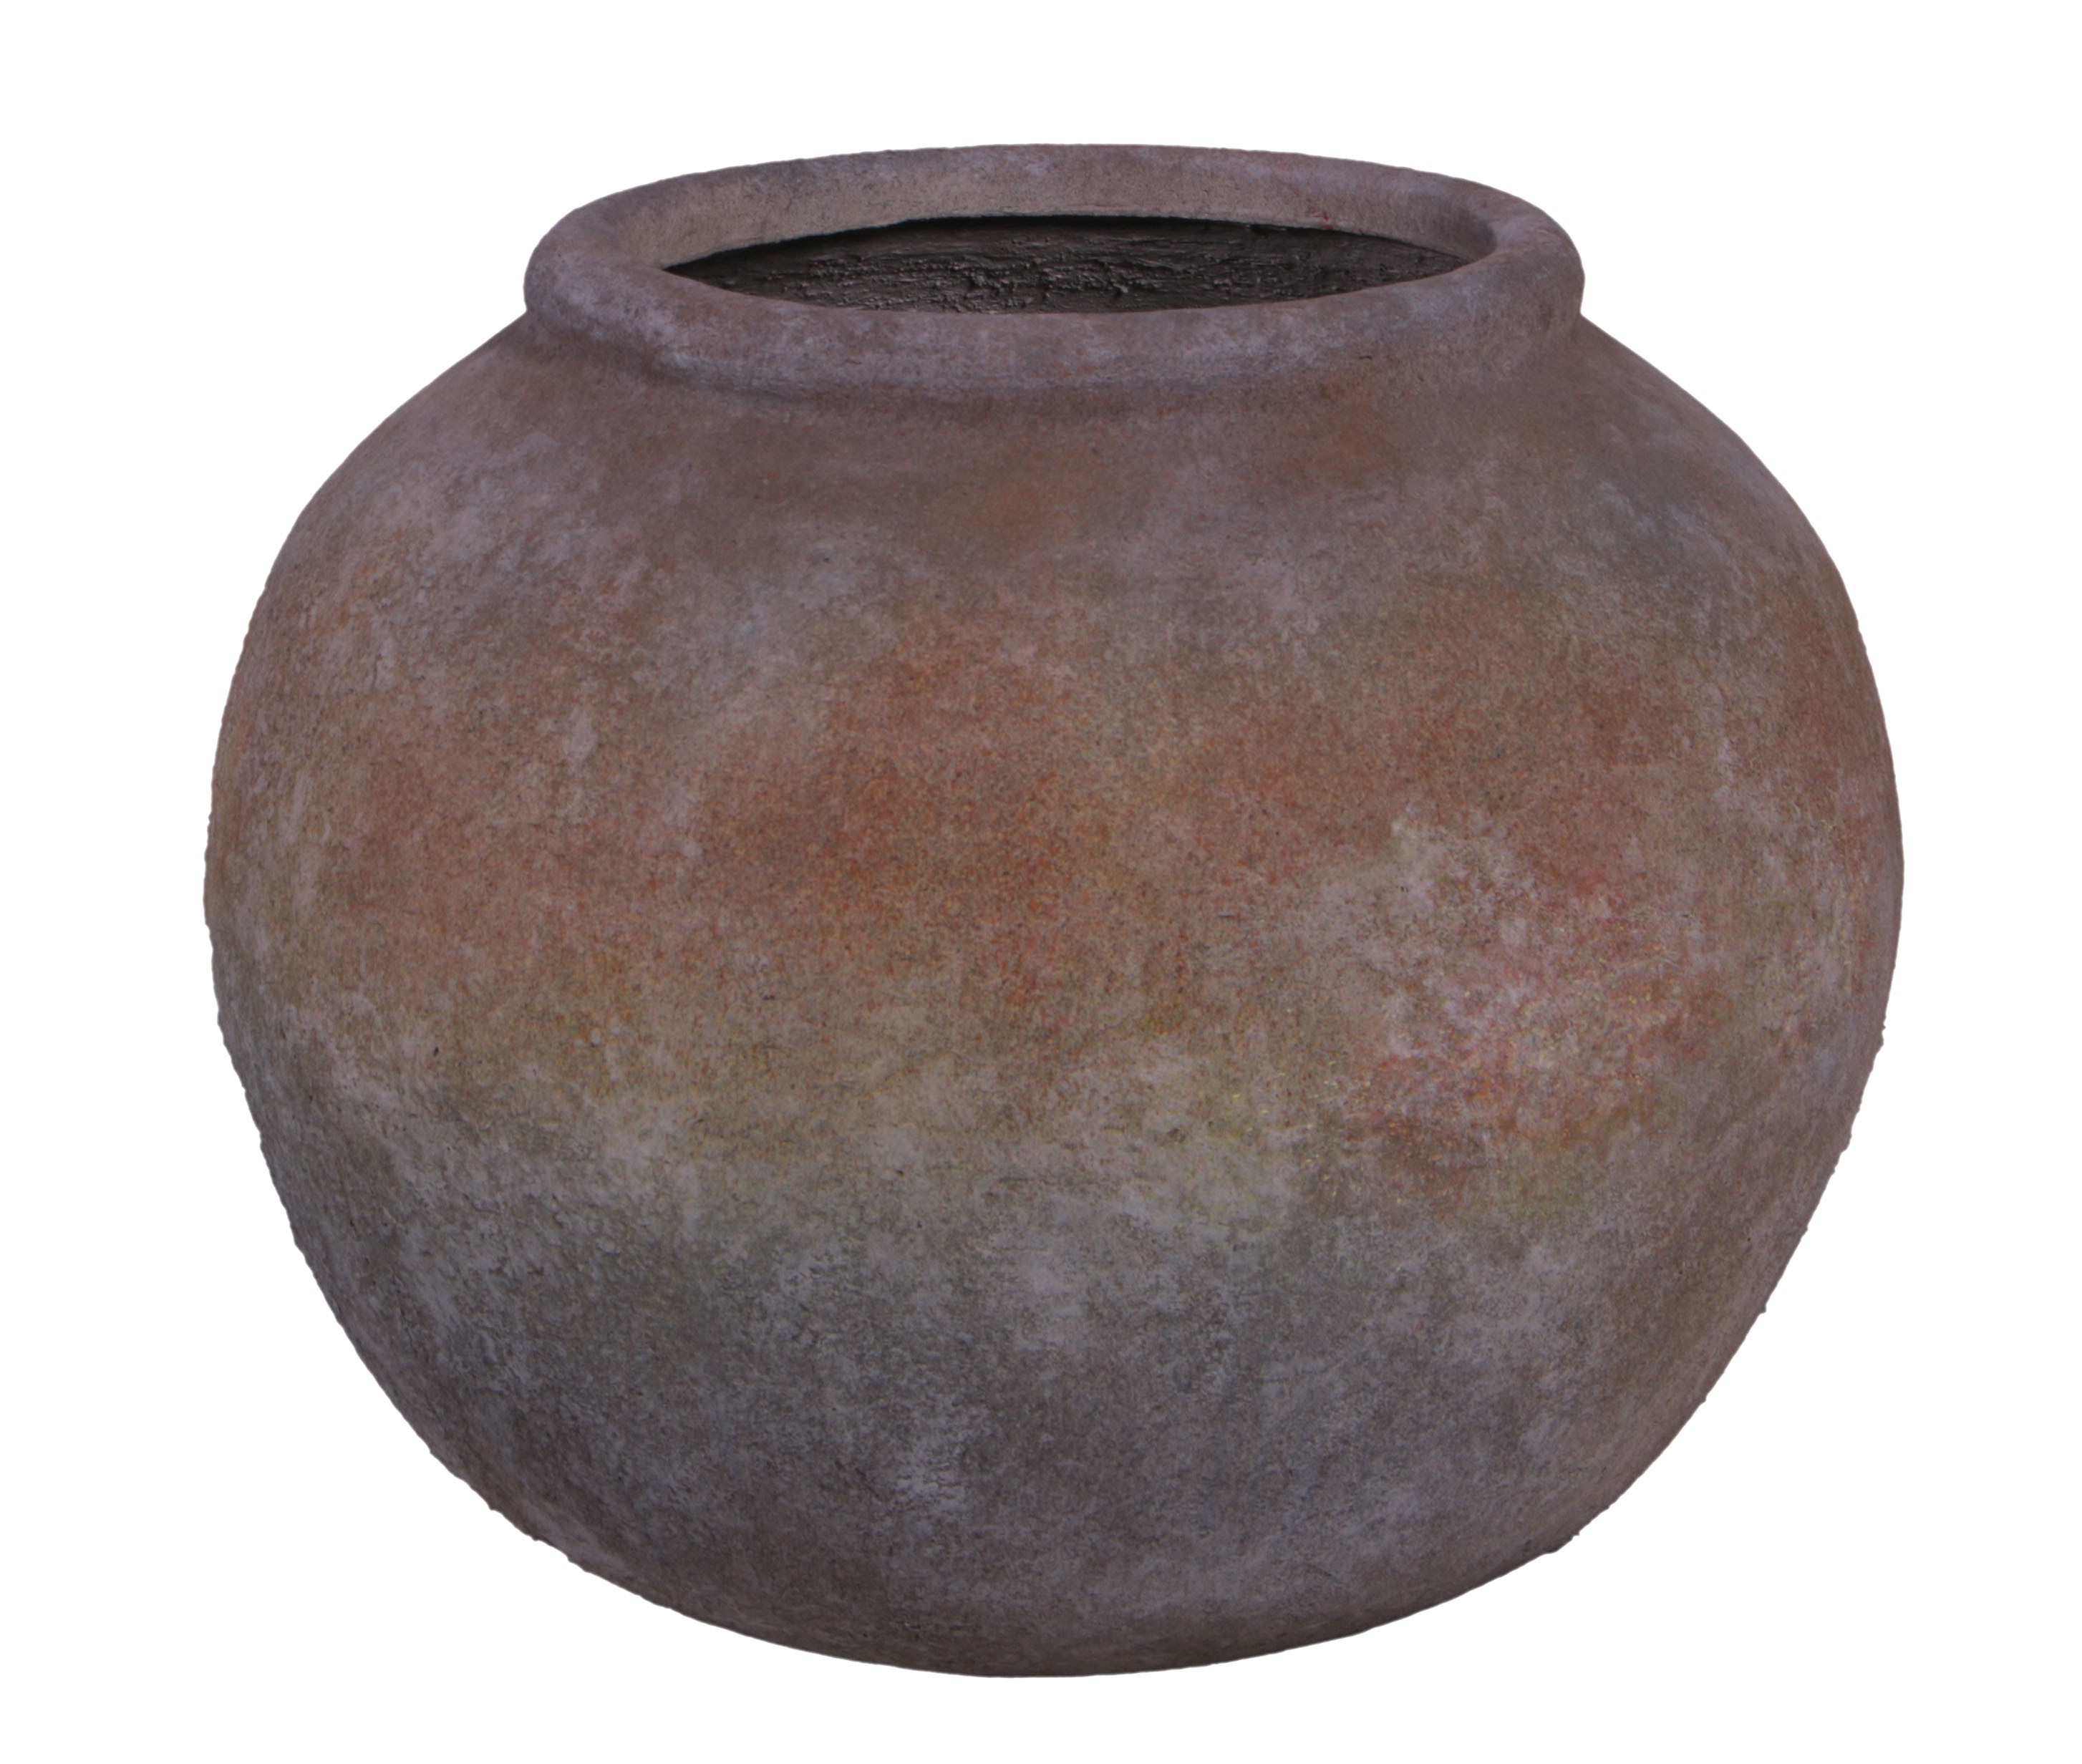 Huge Ancient Mariner Olive Jar - 83cm